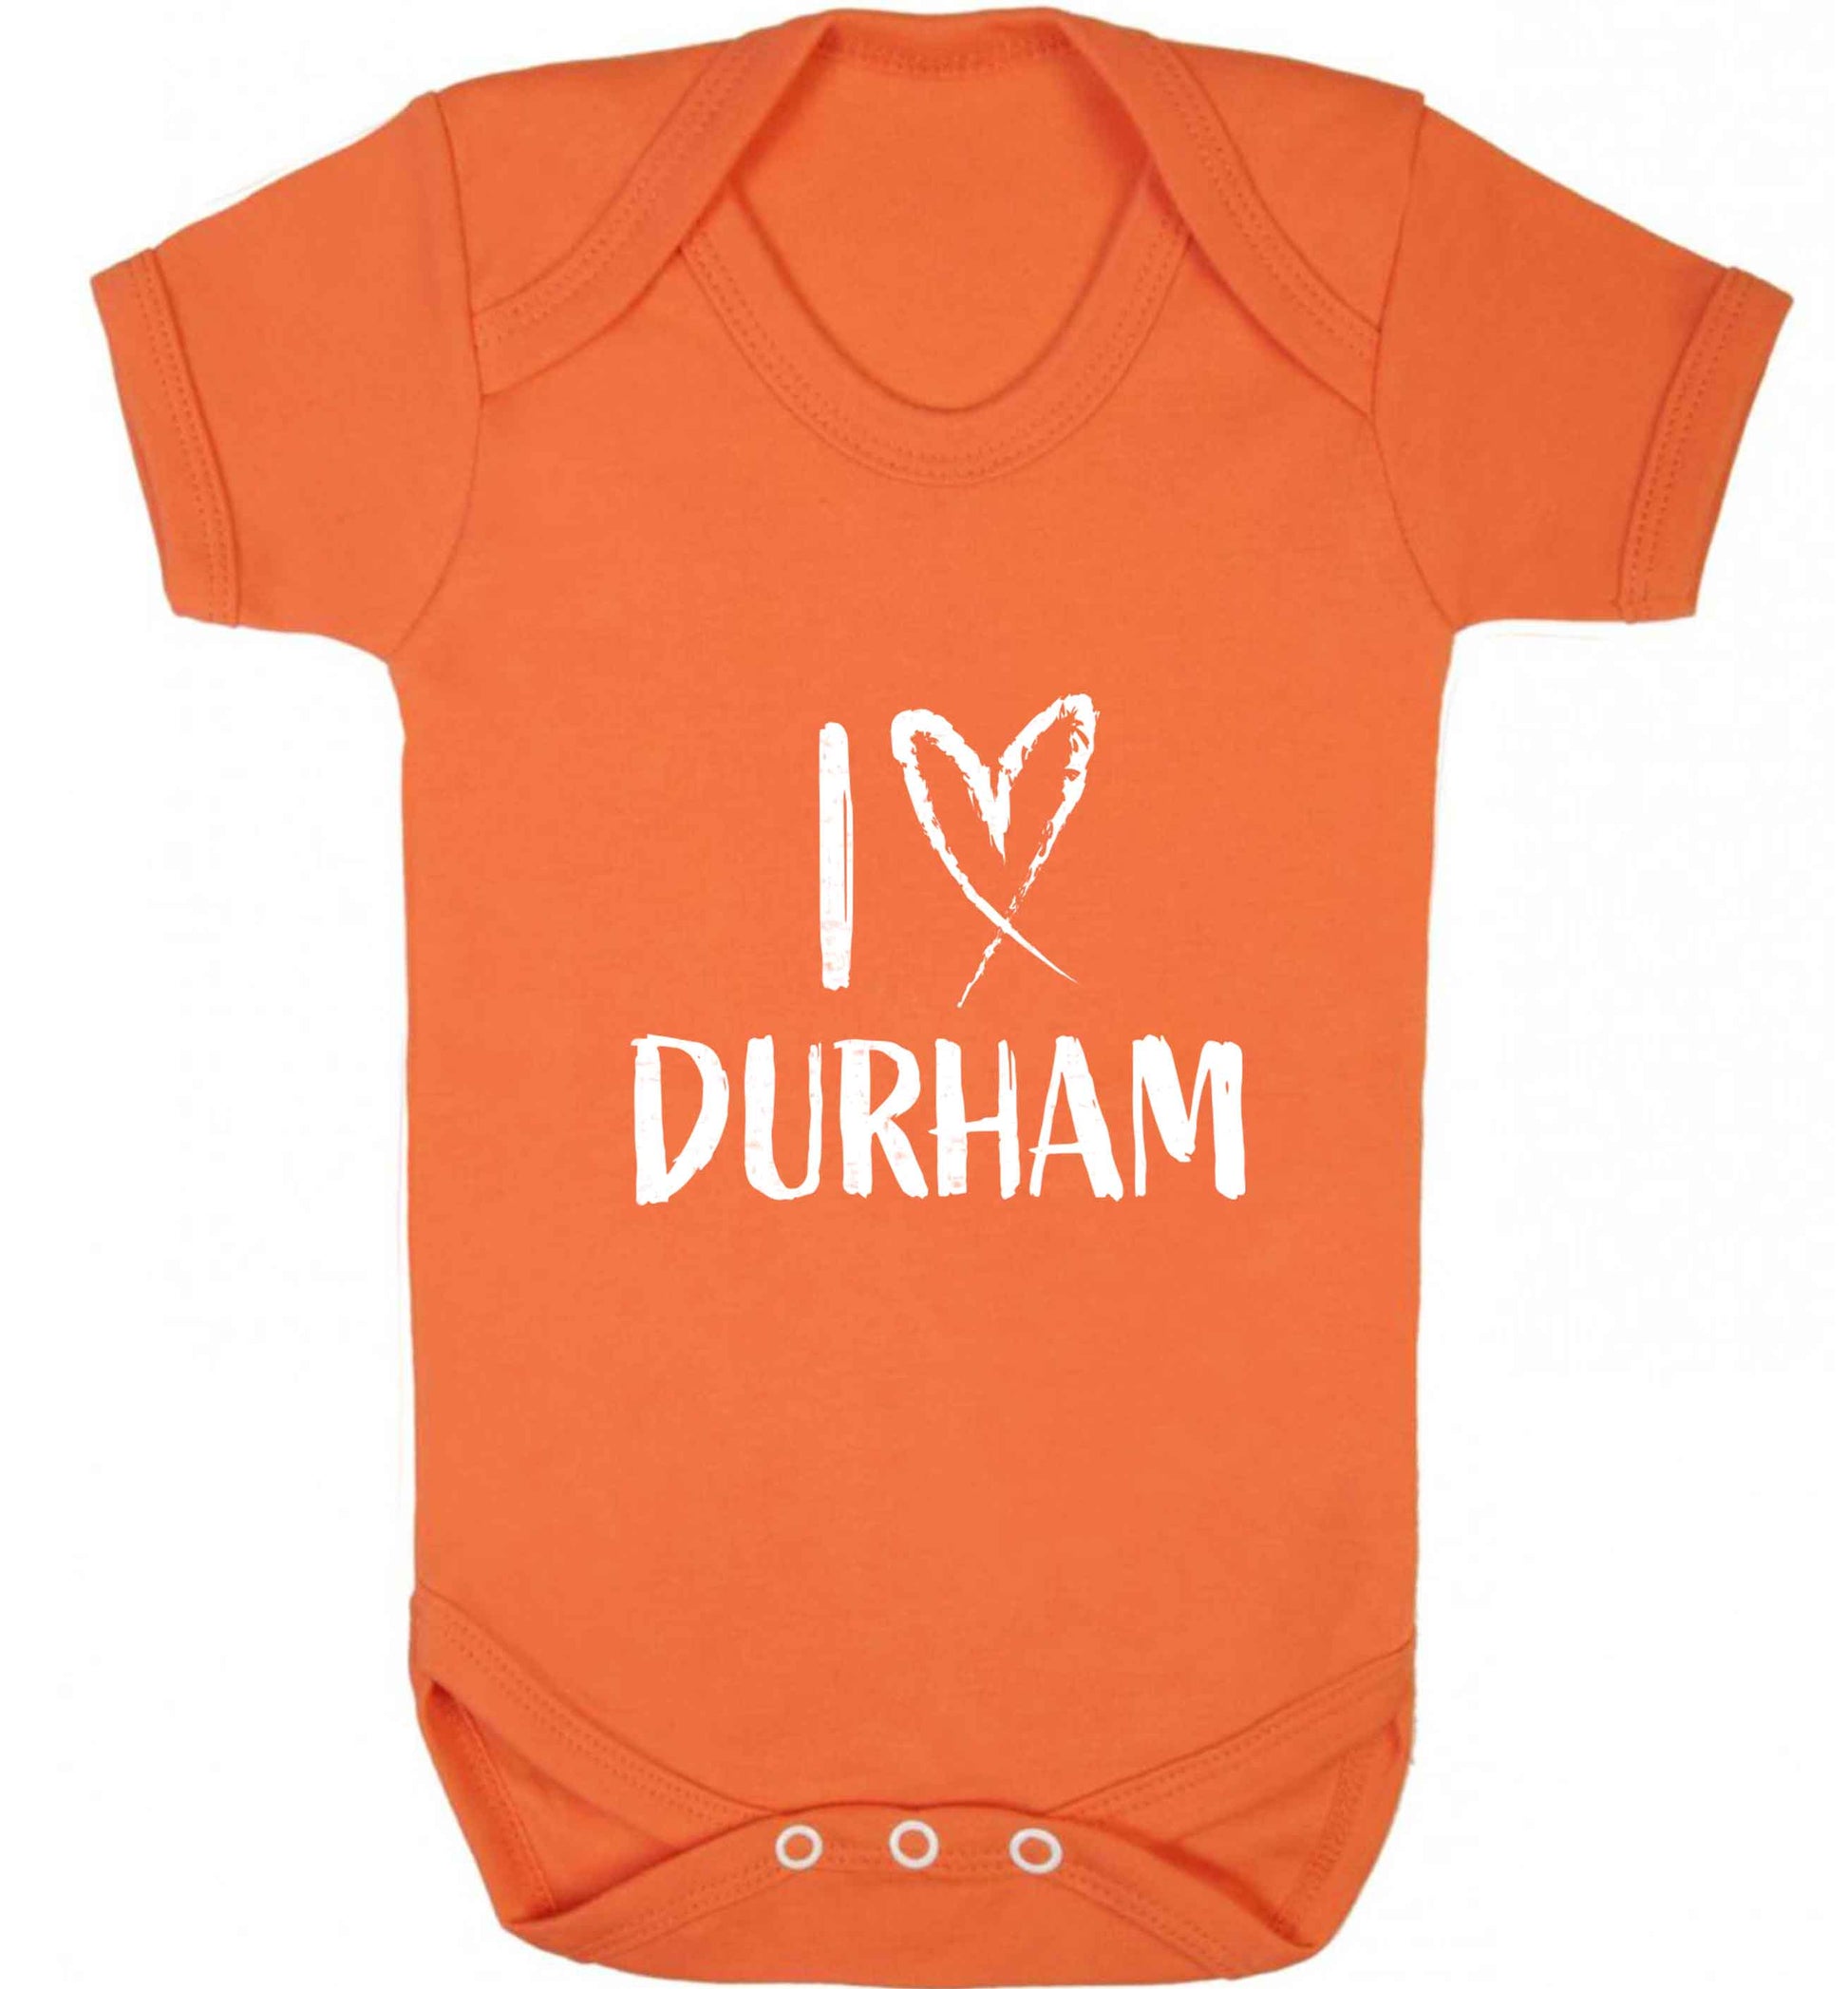 I love Durham baby vest orange 18-24 months